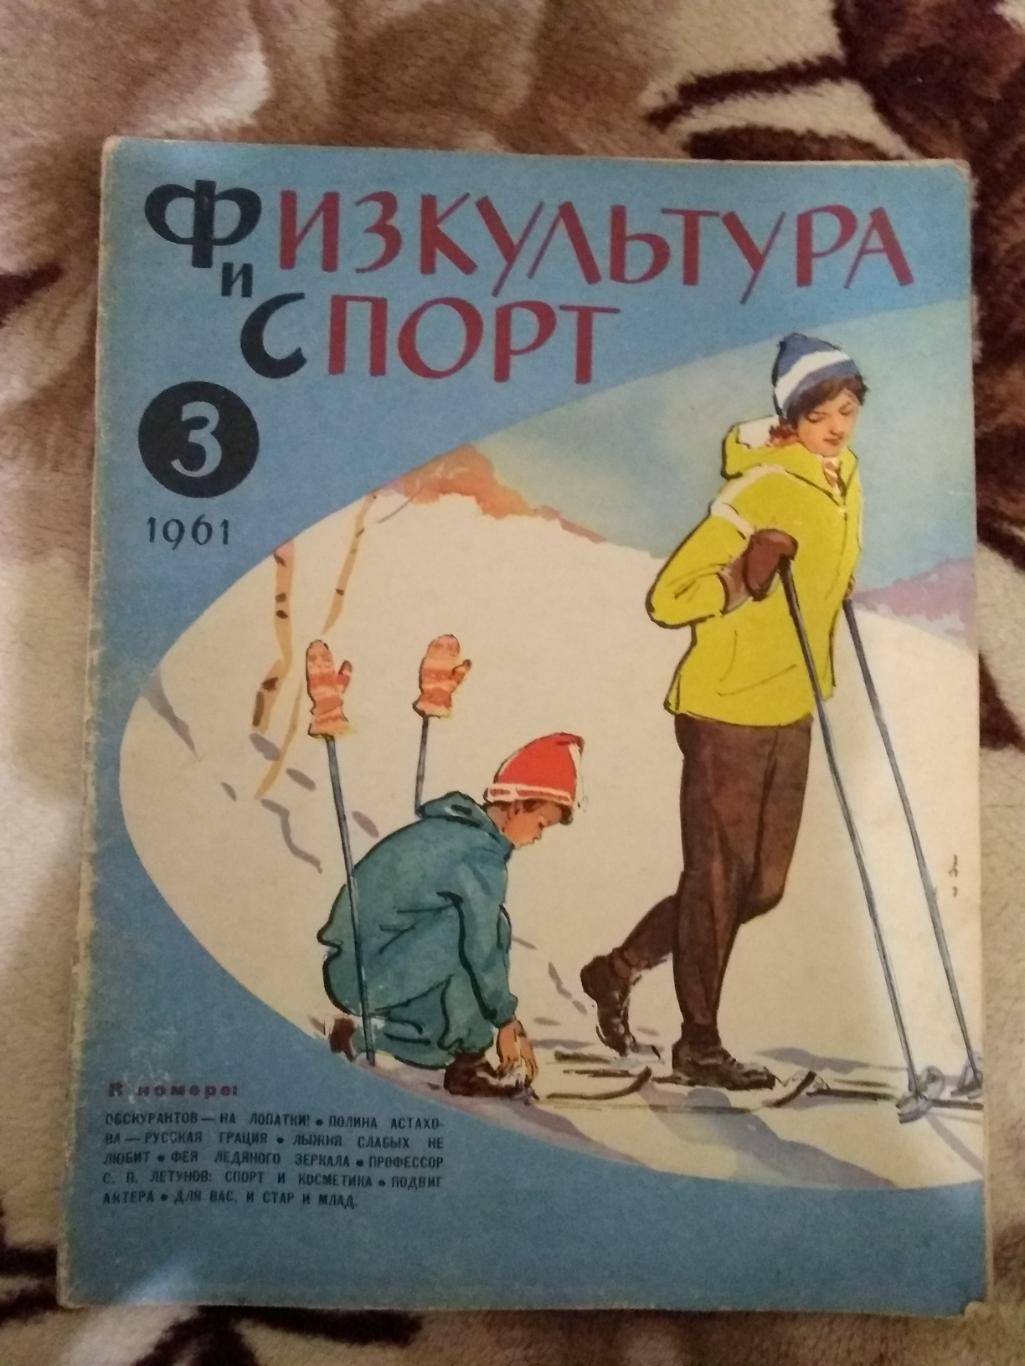 Журнал.Физкультура и спорт № 3 1961 г. (ФиС).